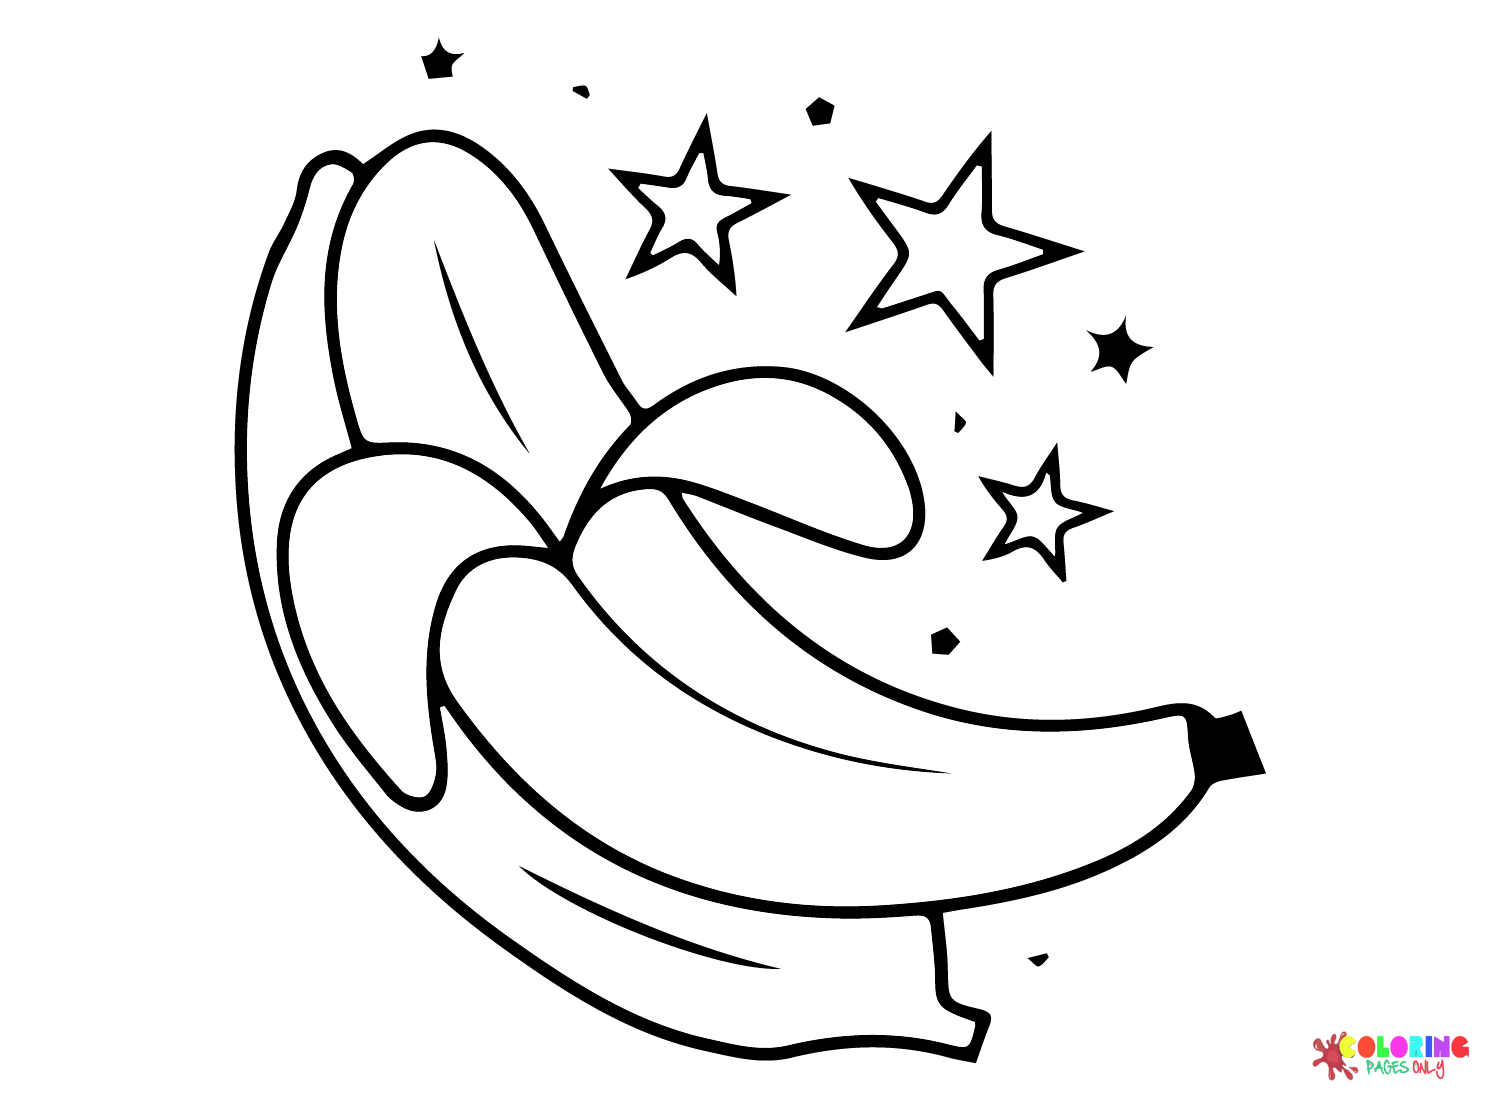 Plátanos estrella de plátanos